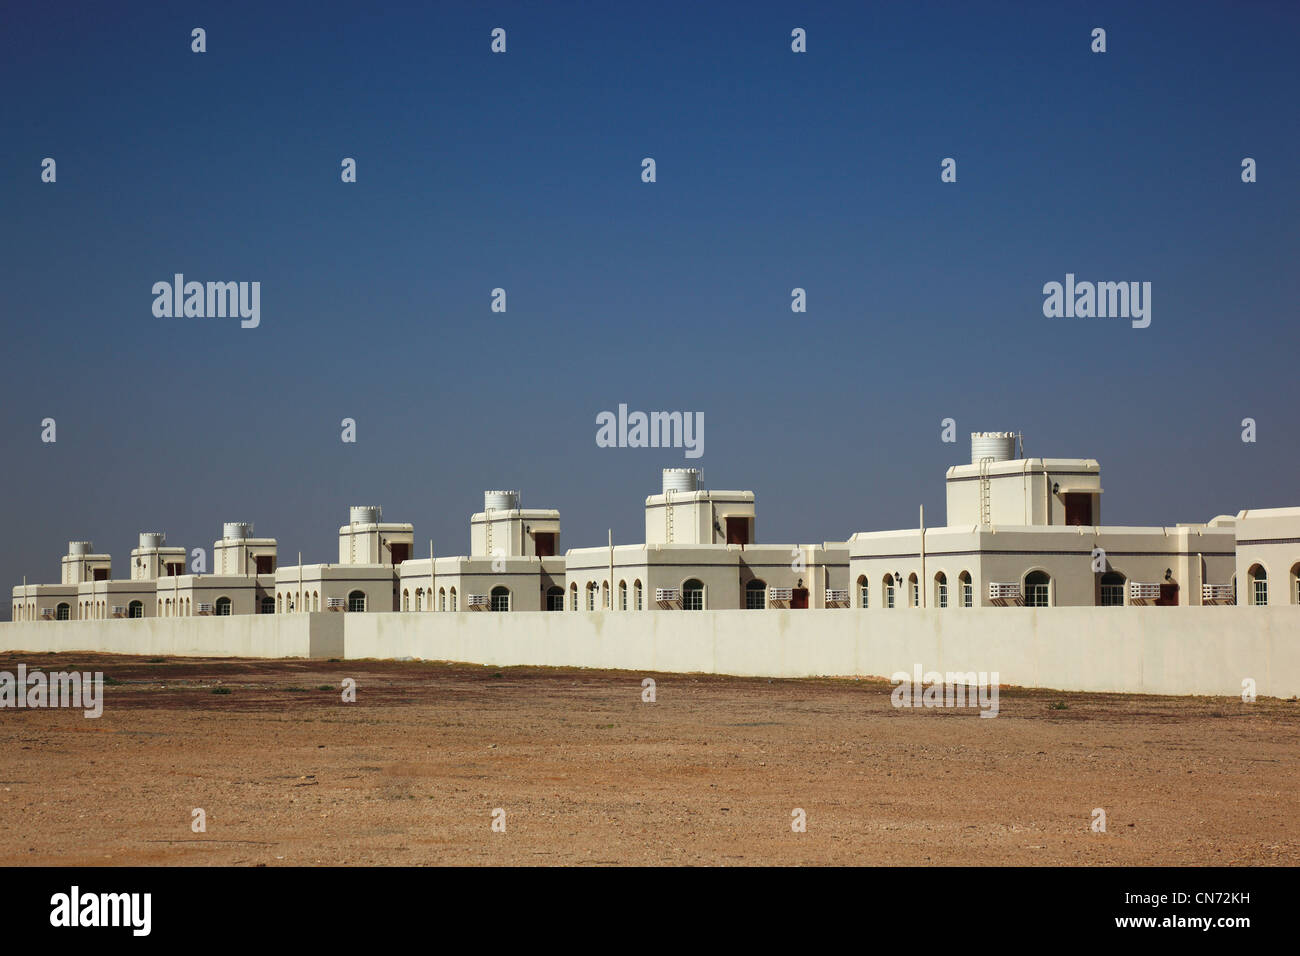 Neubausiedlungen, erbaut vom Staat Oman für die Umsiedlung von Arbeitern der Ölfelder, Oman Stock Photo